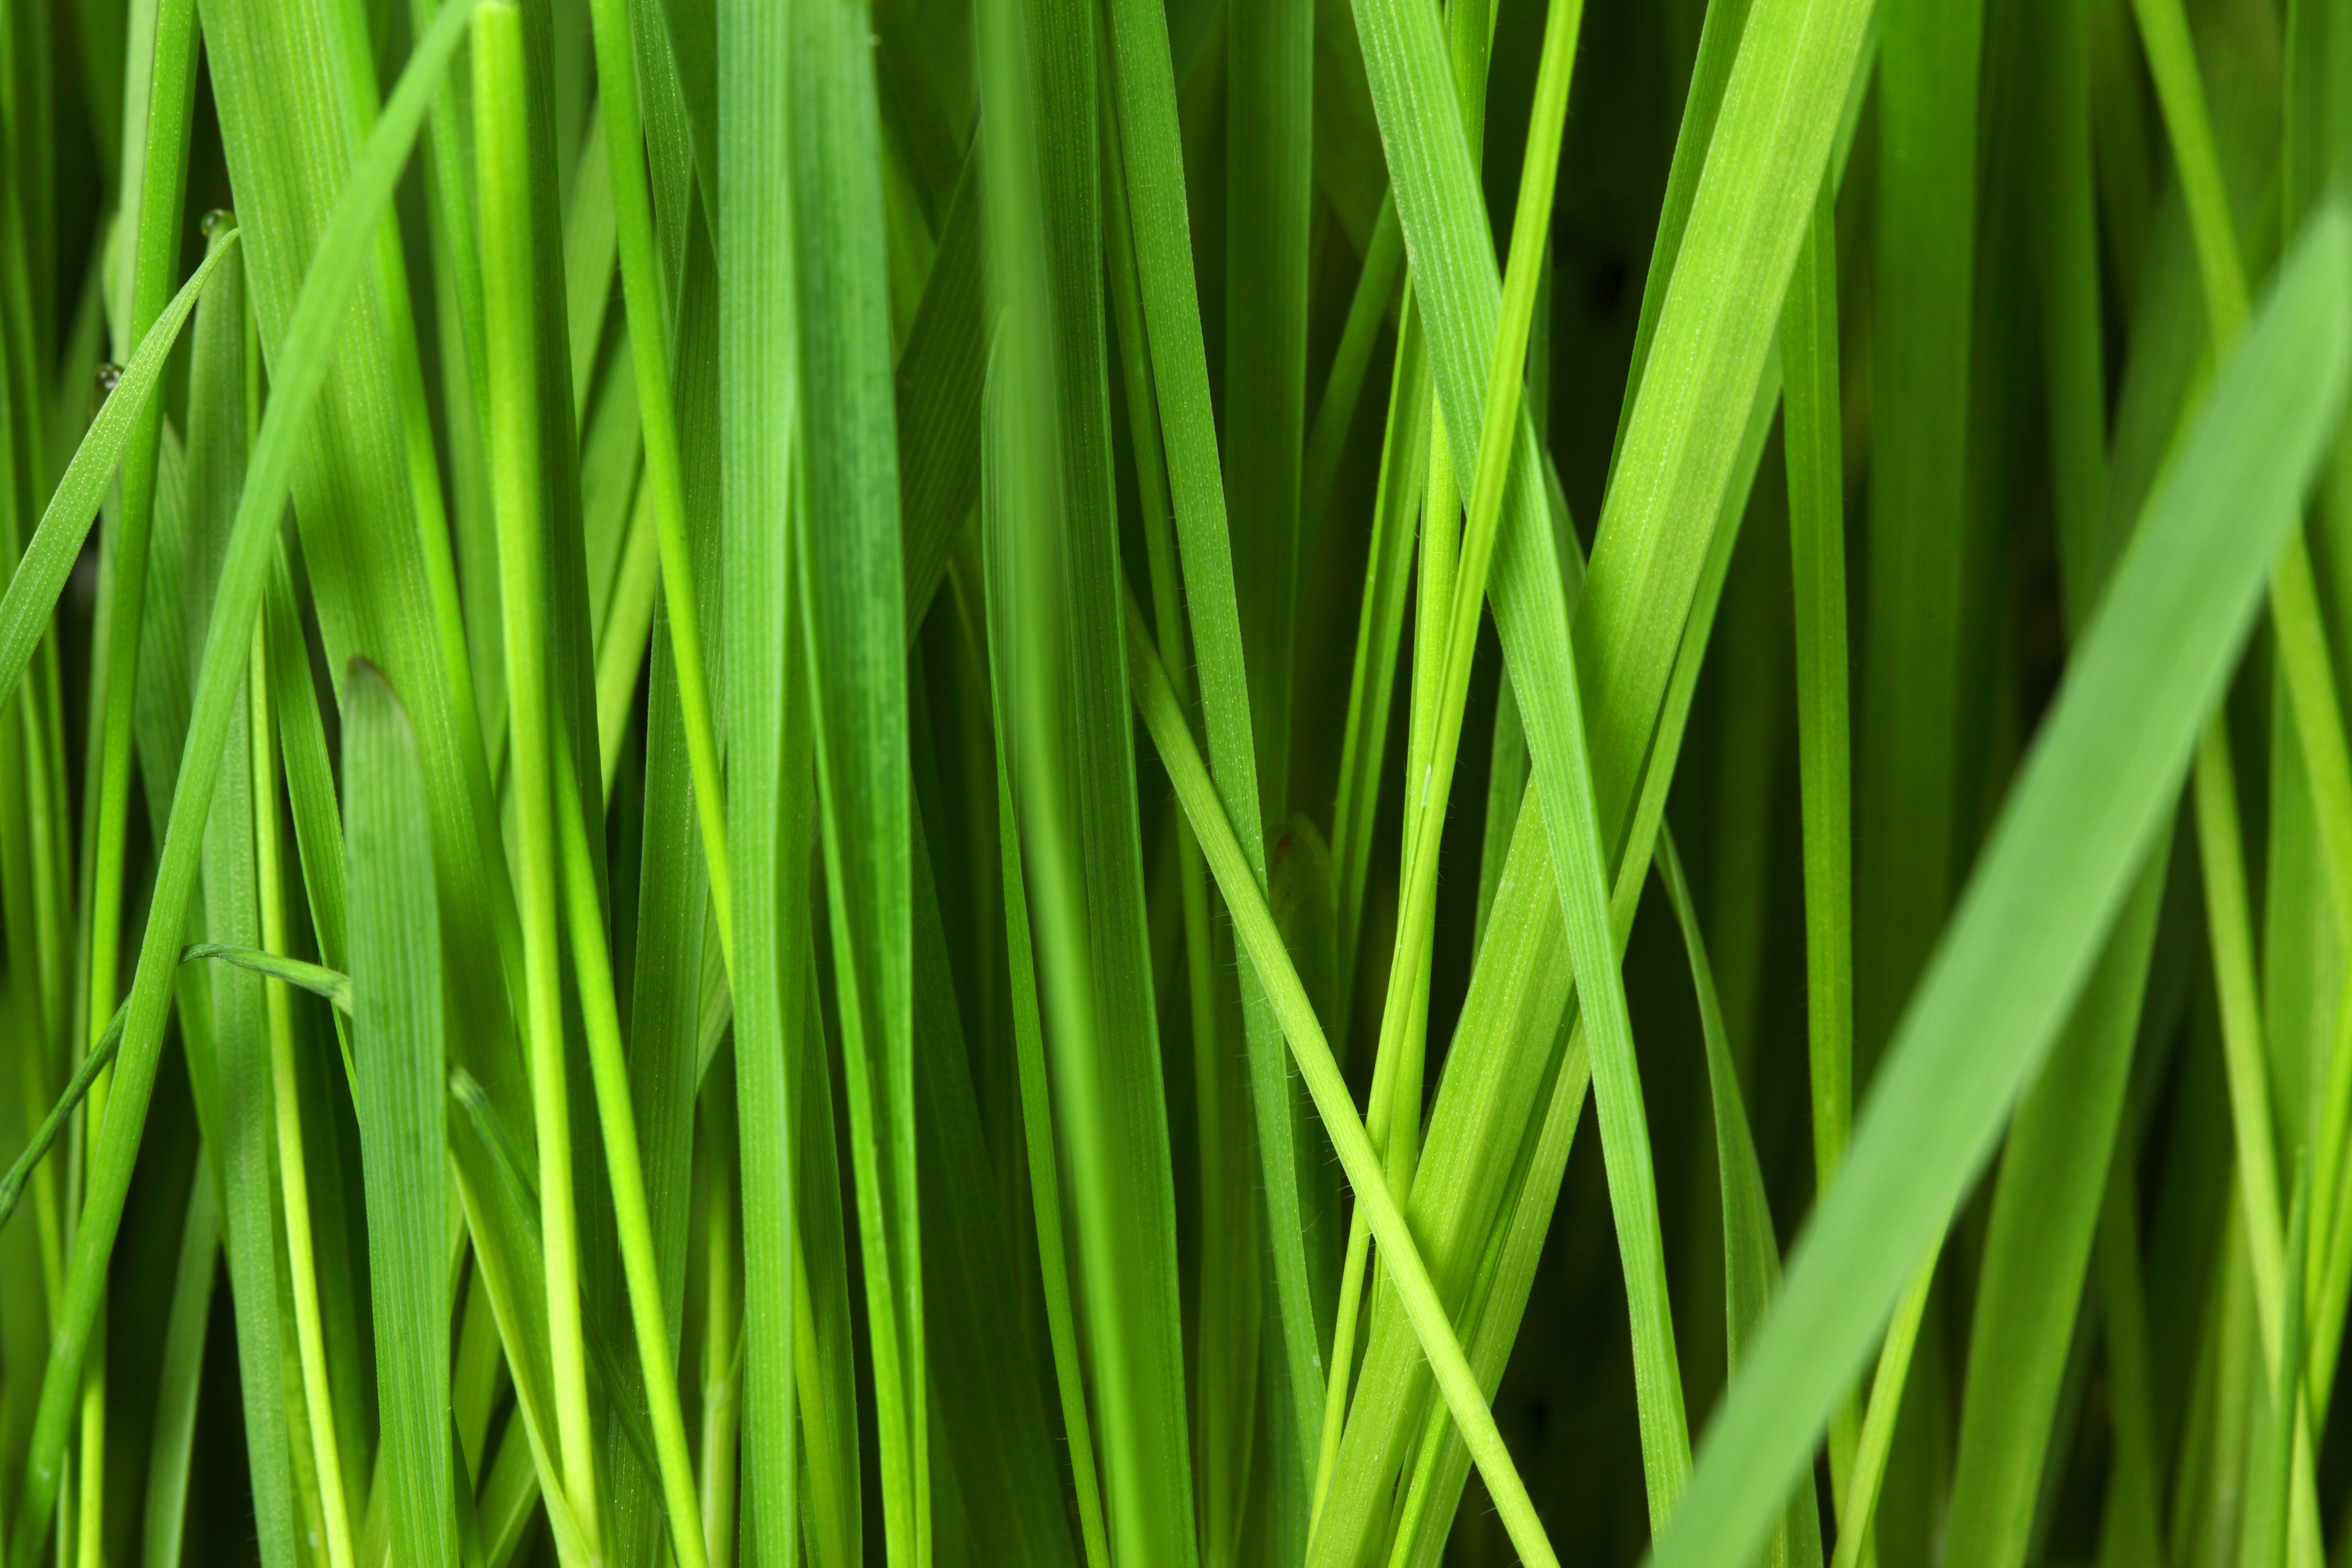 green grass